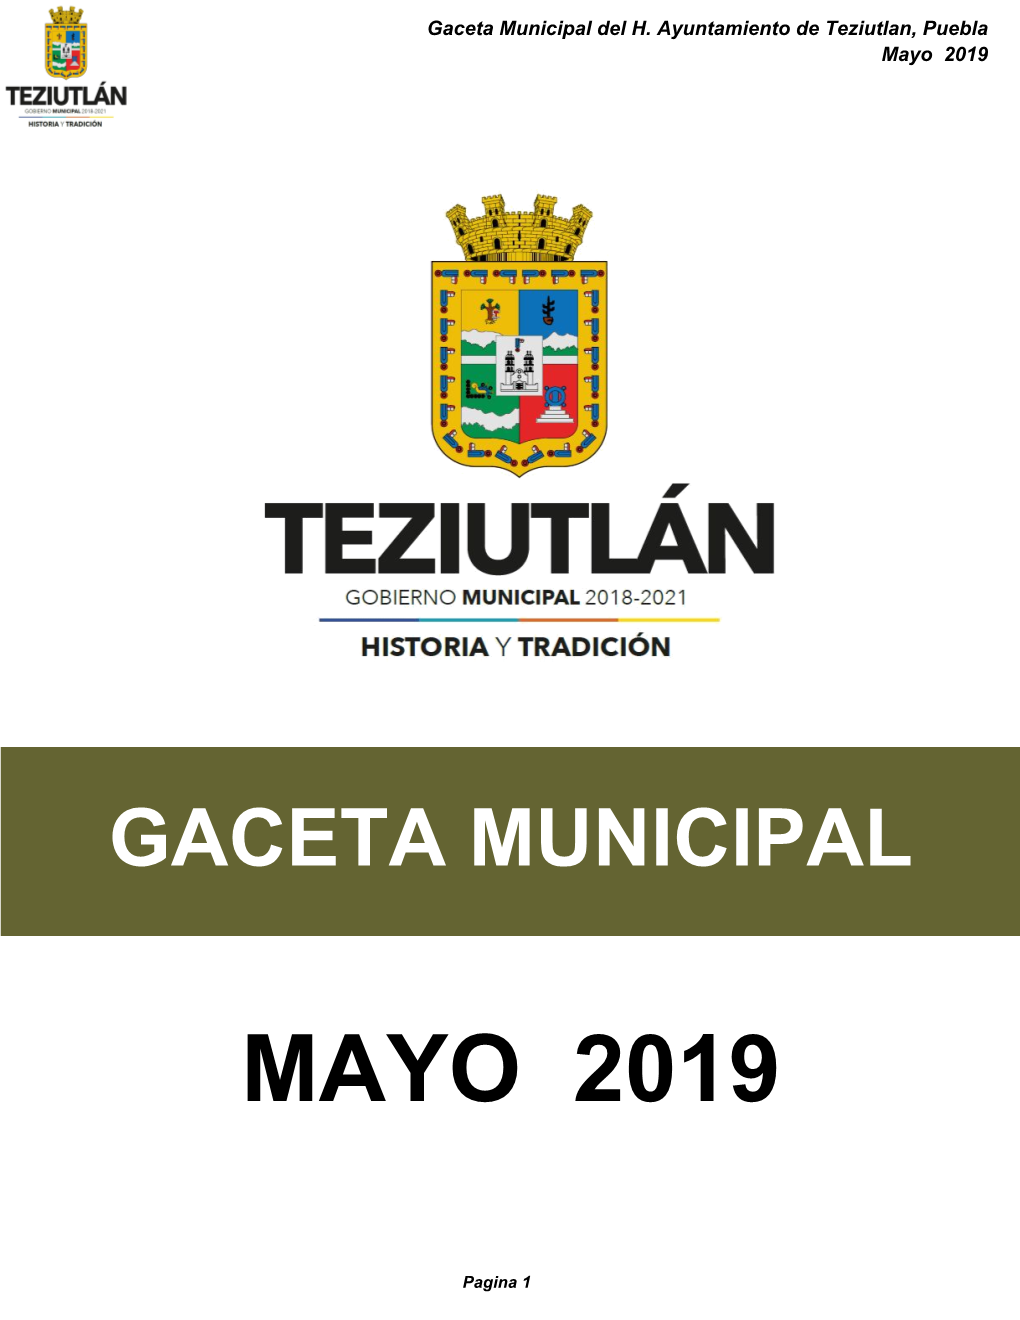 Gaceta Municipal Mayo 2019